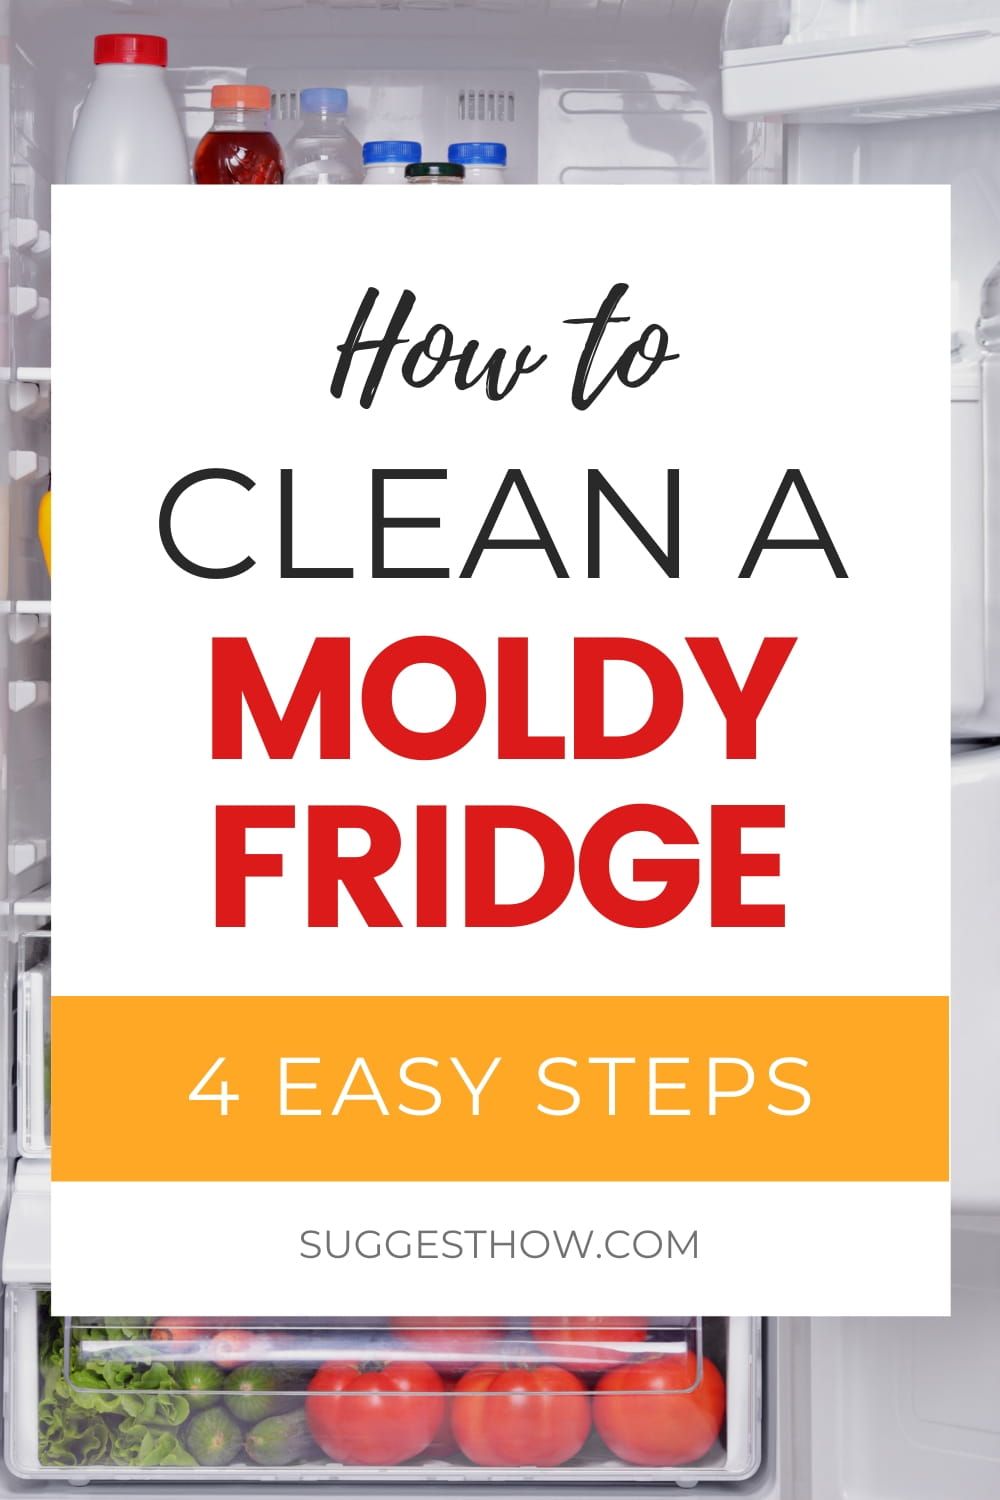 How to Clean a Moldy Fridge